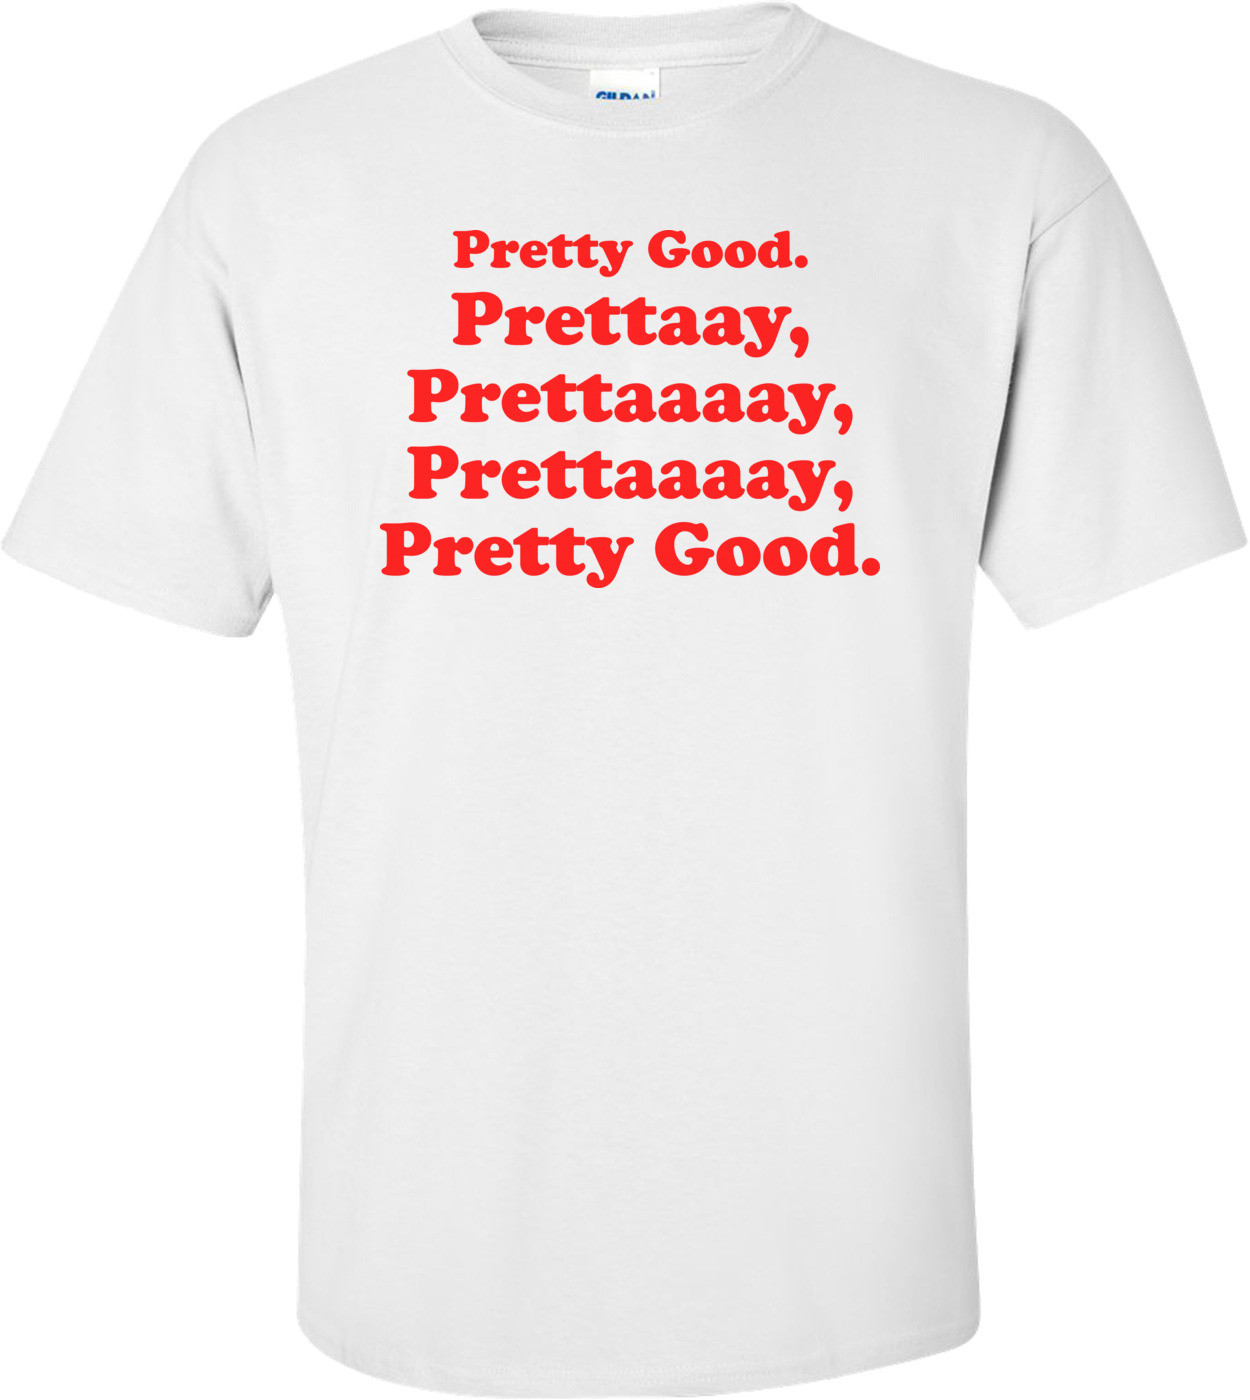 Pretty Good, Pretty Pretty Good - Curb Your Enthusiasm, Larry David Shirt